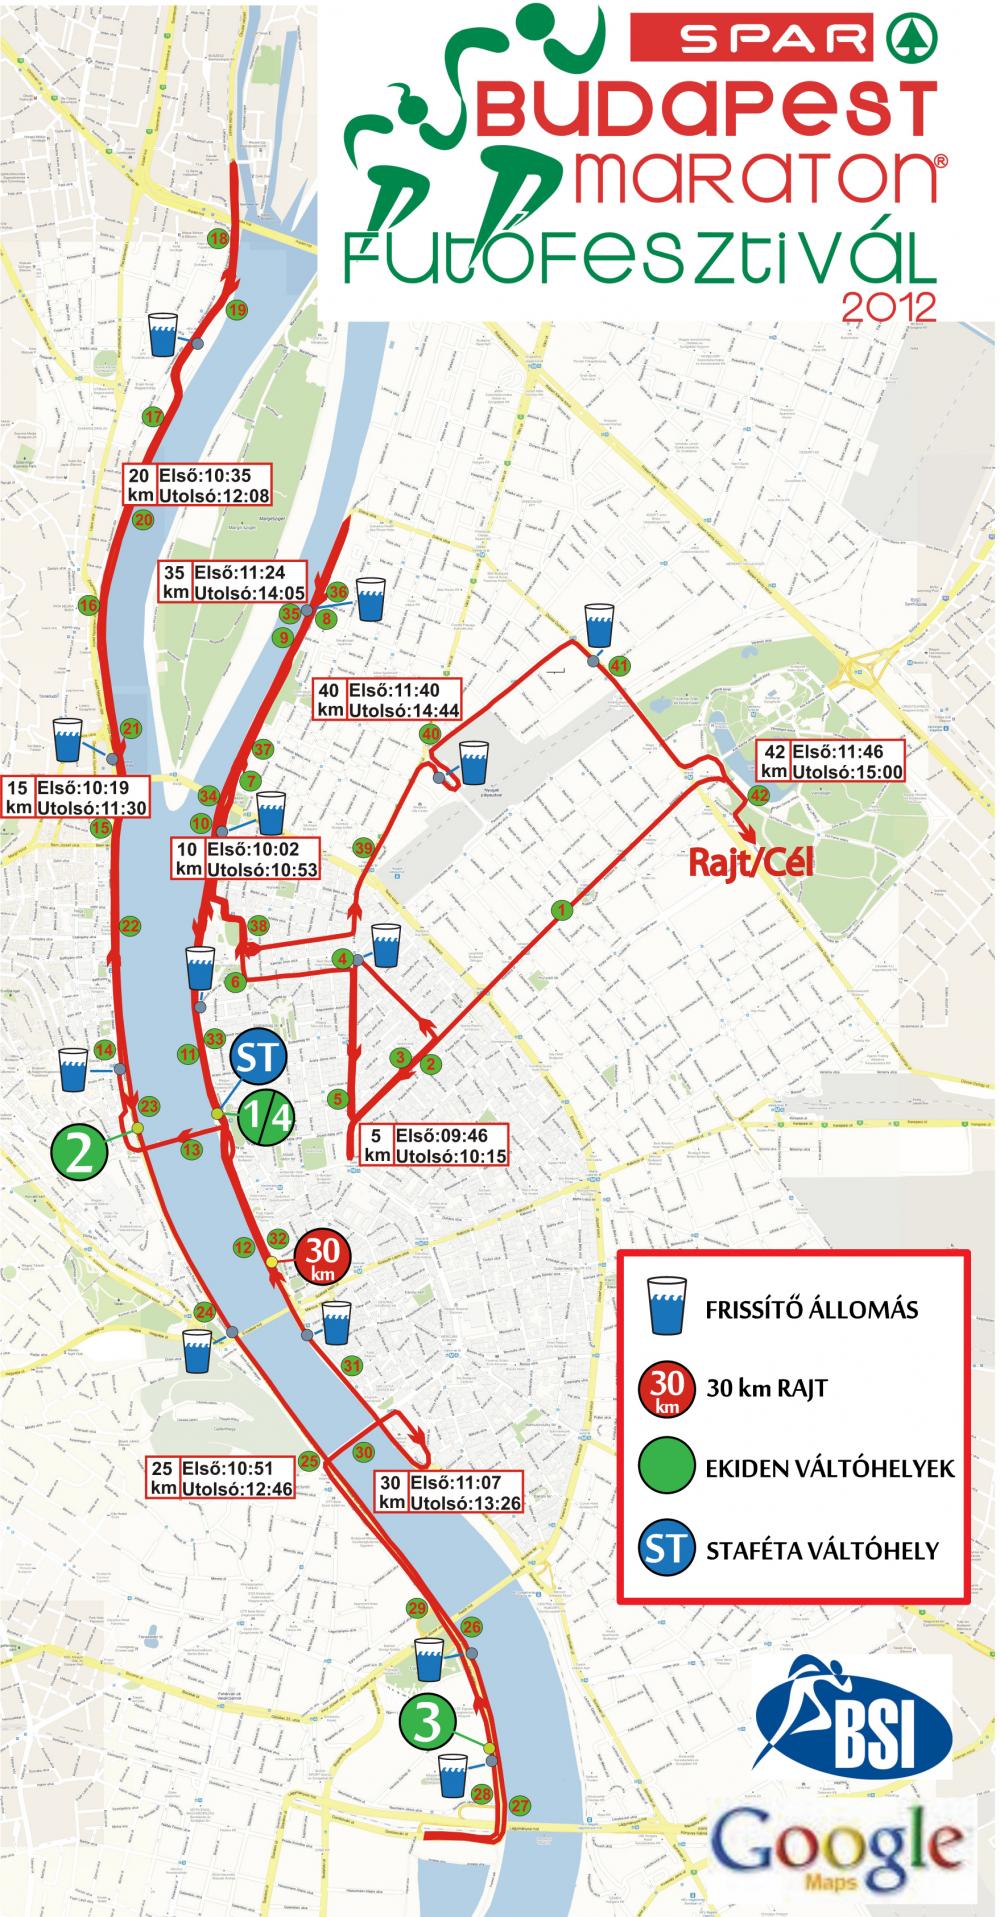 útvonalterv budapest térkép 27. Spar Budapest Maraton   térkép   Futanet.hu útvonalterv budapest térkép